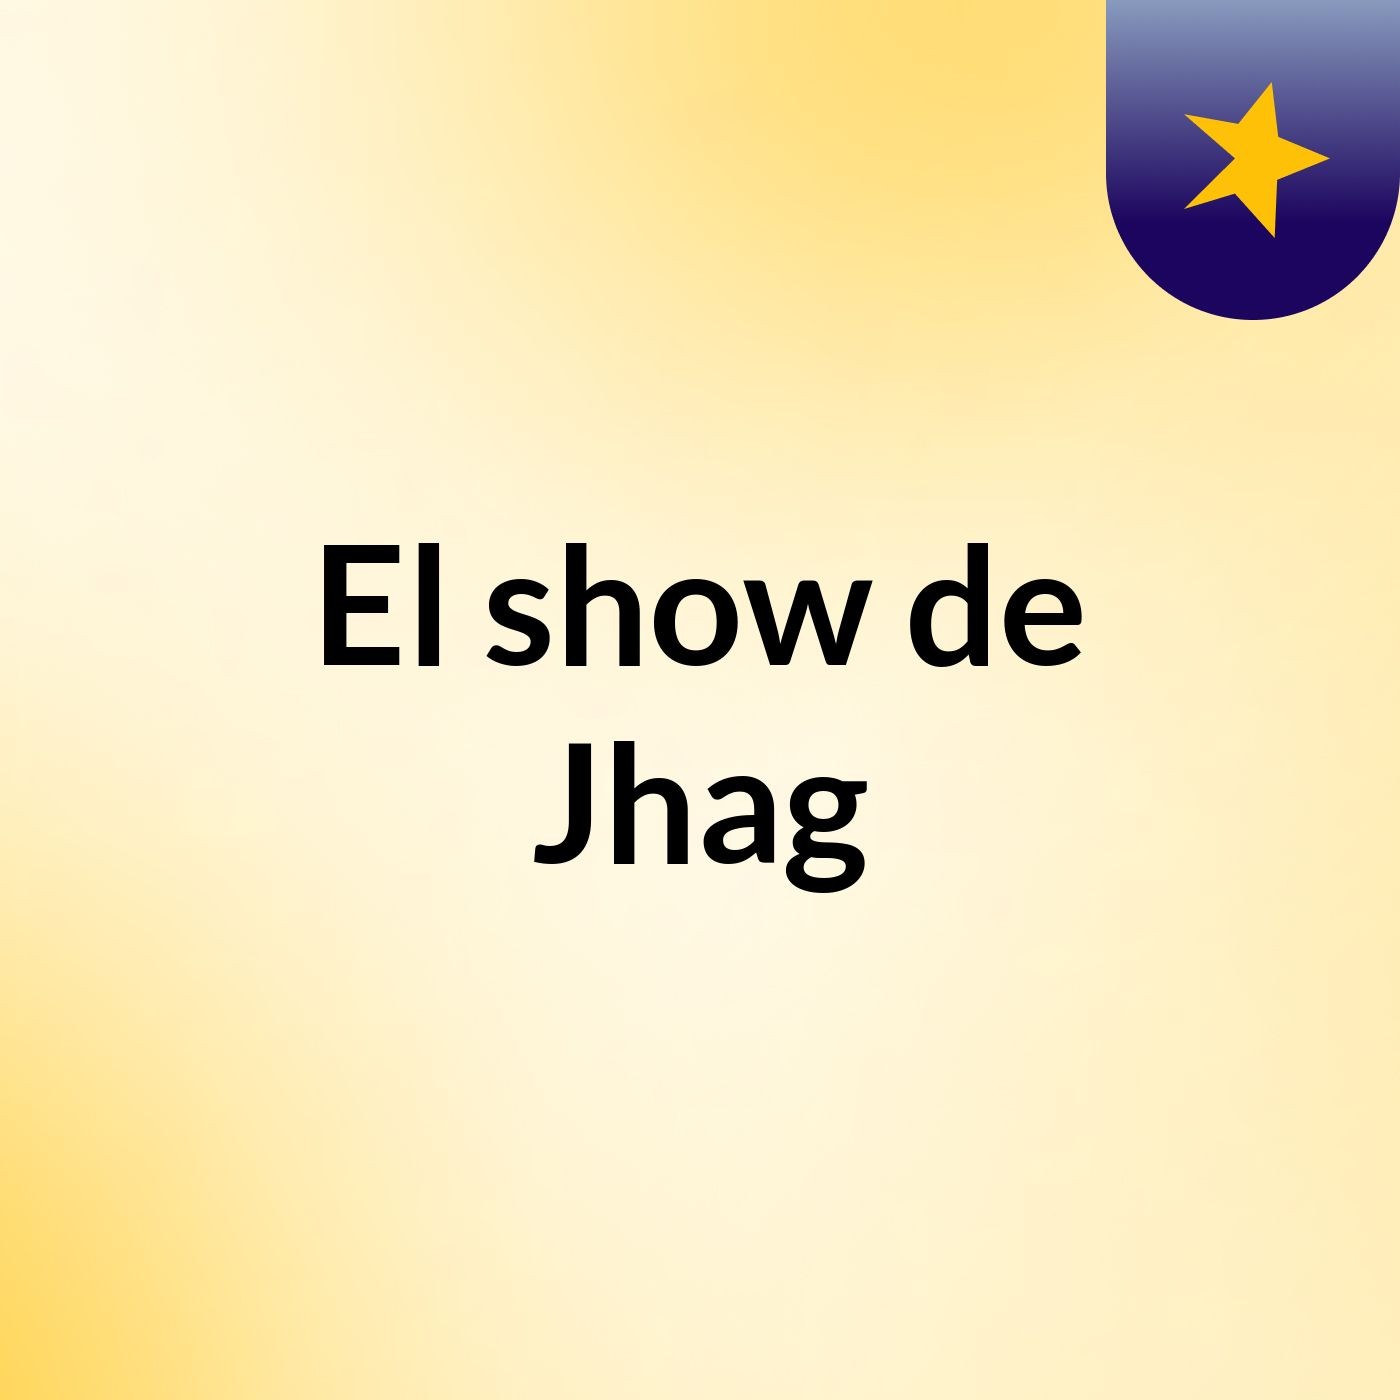 El show de Jhag